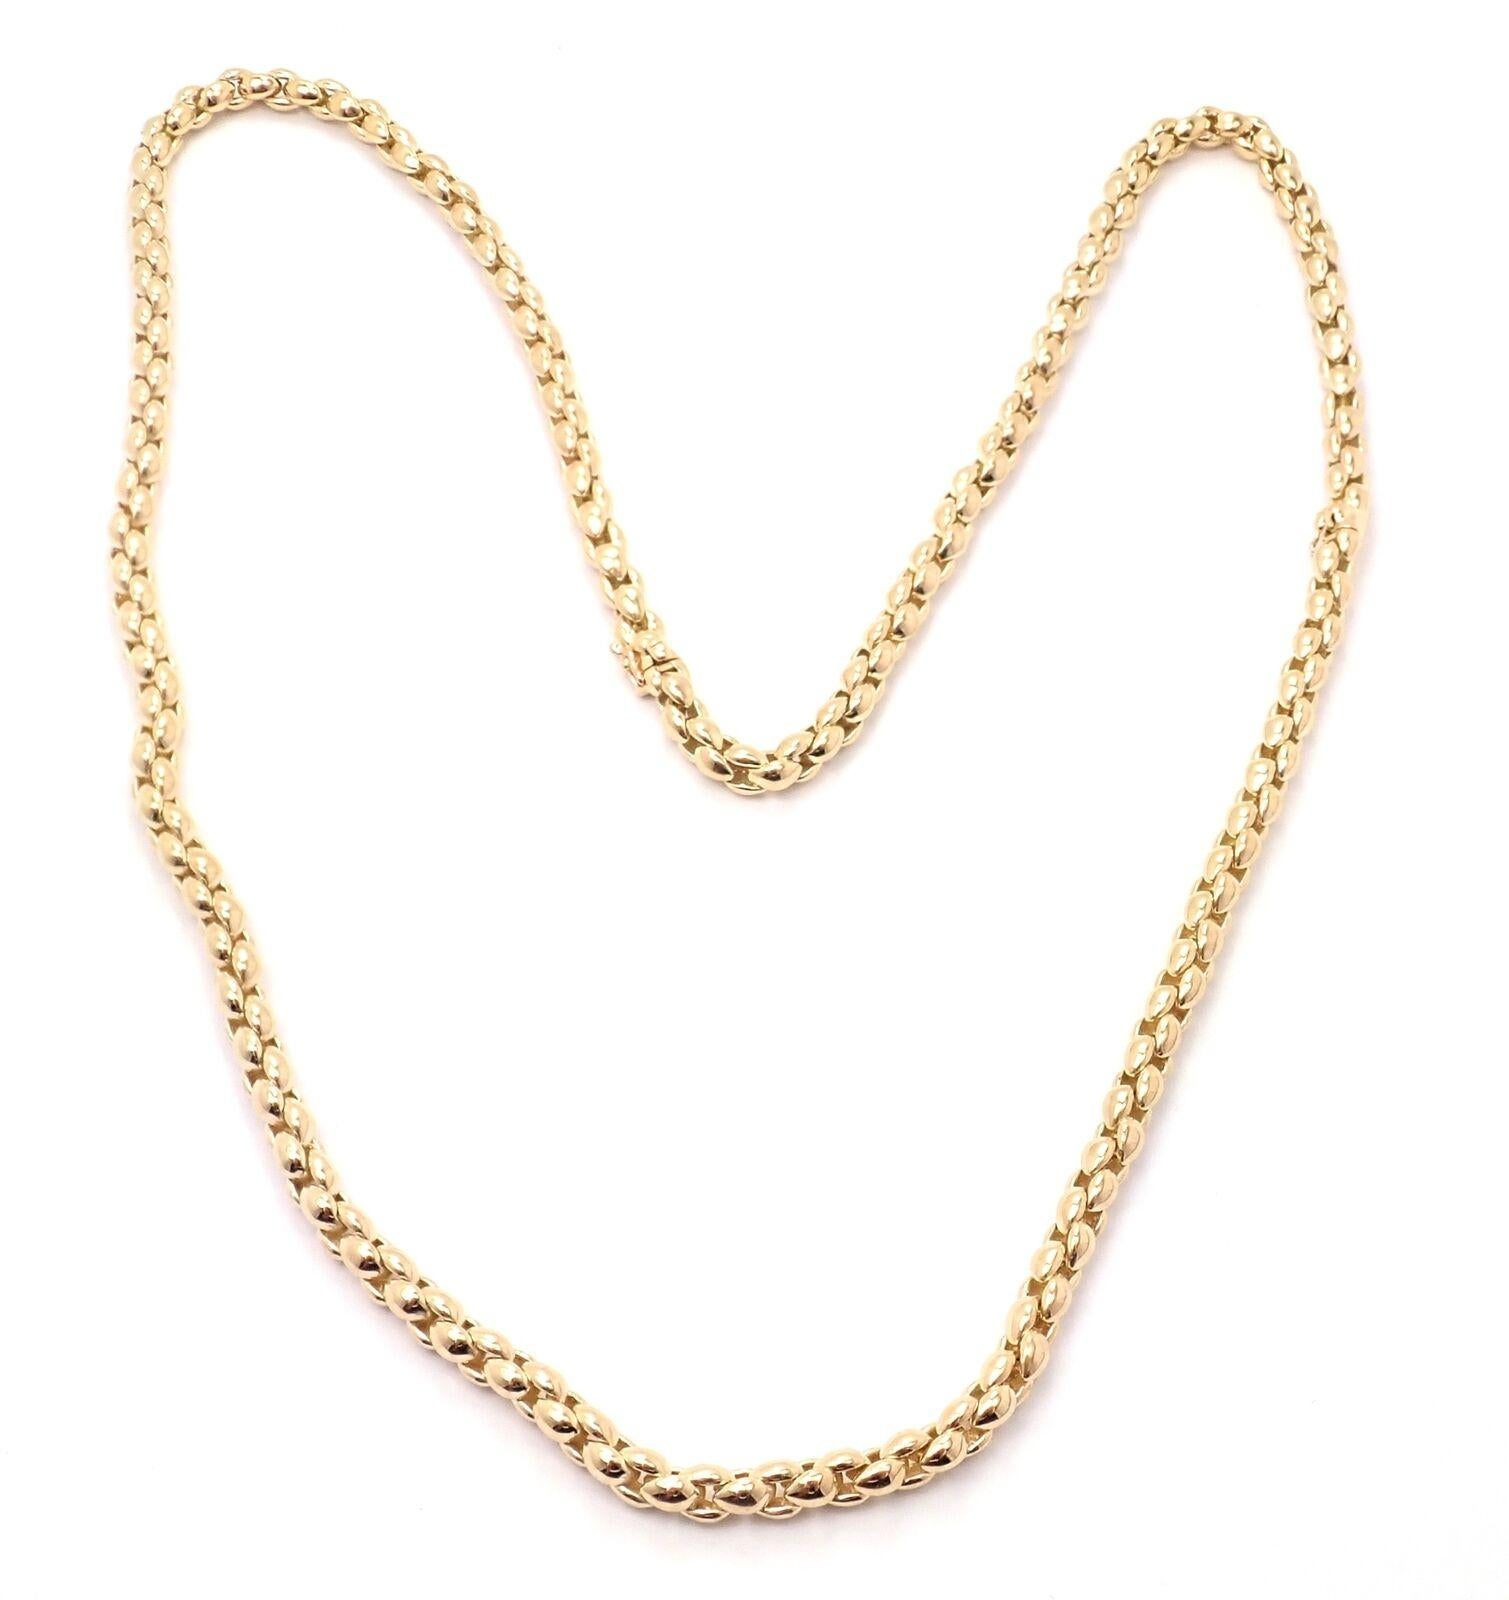 18k Gelbgold Vintage Link Kette Halskette und Armband Set von Cartier.
Einzelheiten:
Länge: Halskette - Länge: 16.5